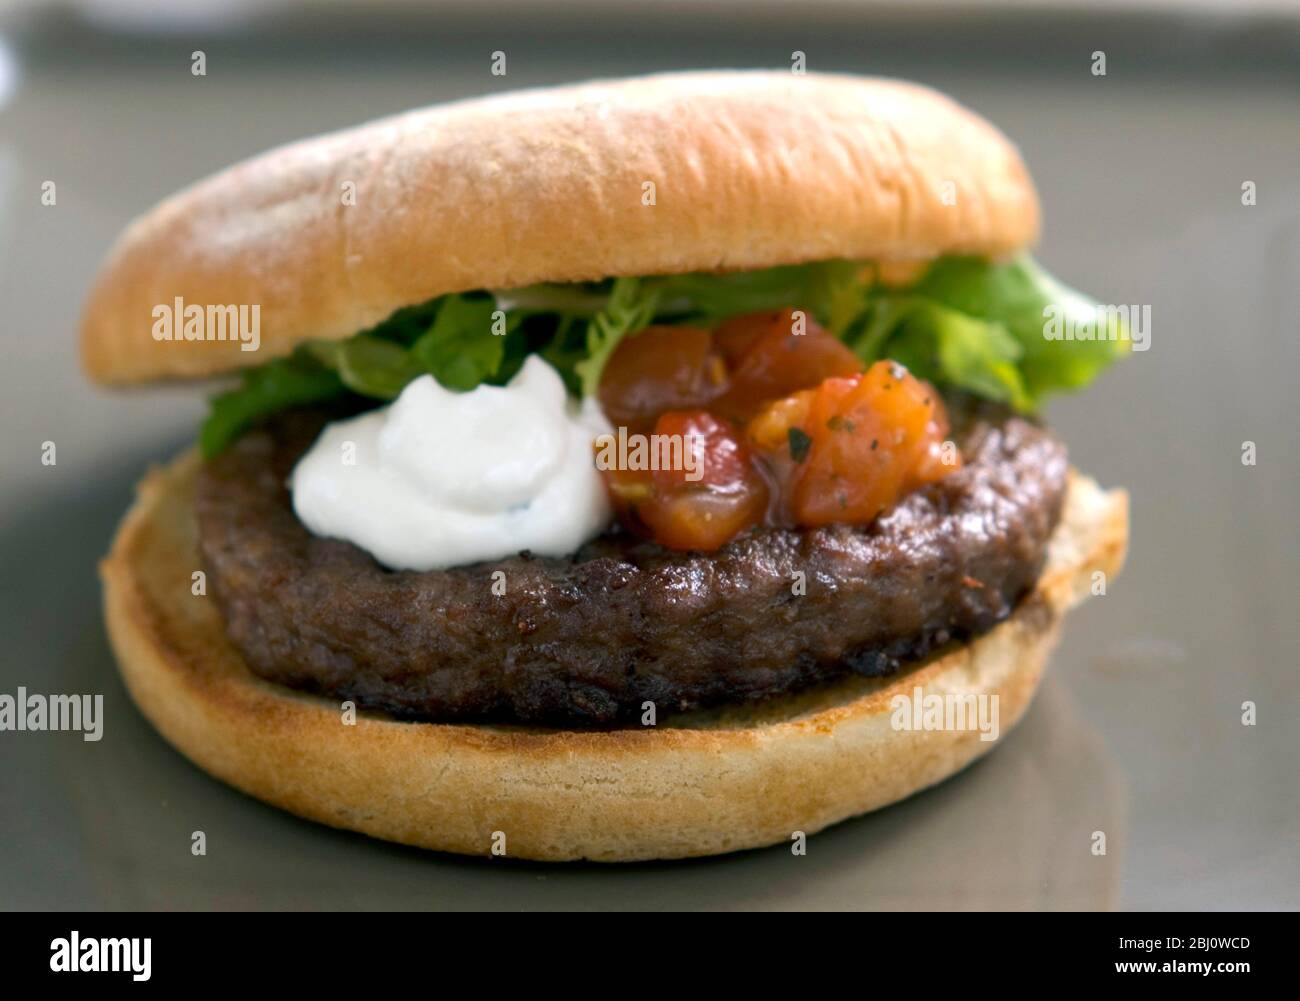 Hamburger alla griglia in panna con insalata di frisee, salsa di pomodoro e panna acida - Foto Stock